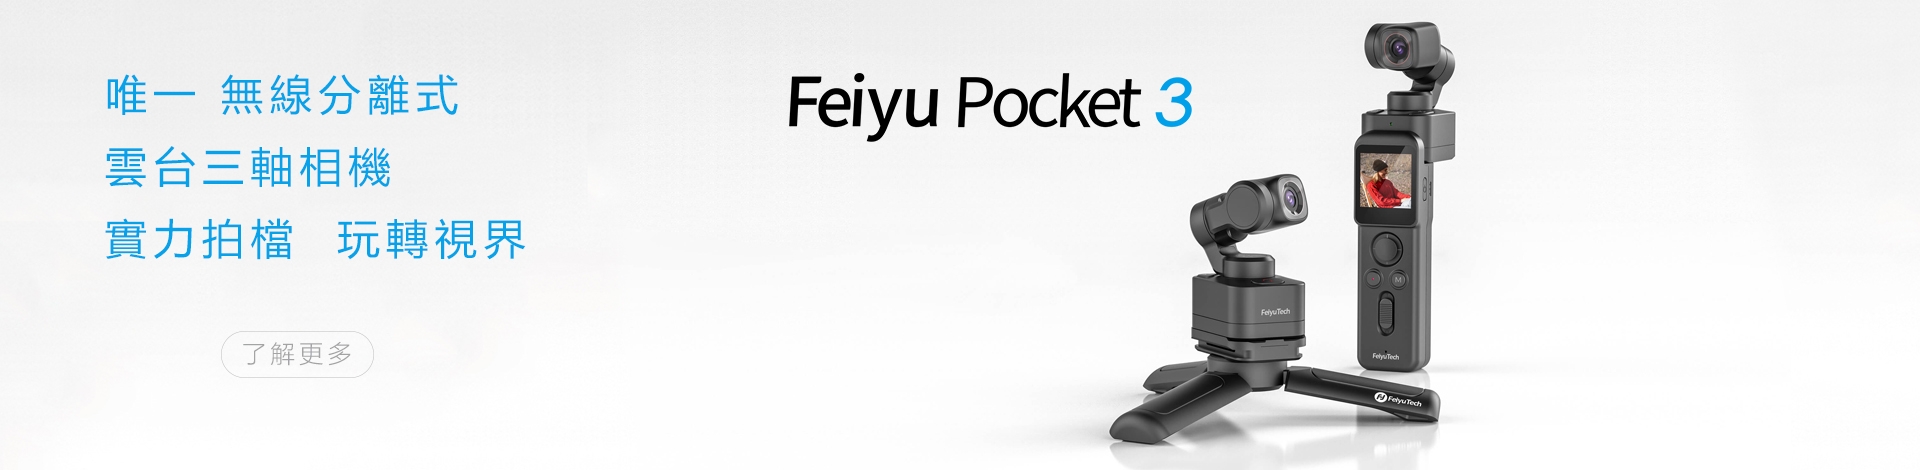 Feiyu Pocket 3 上市 BN